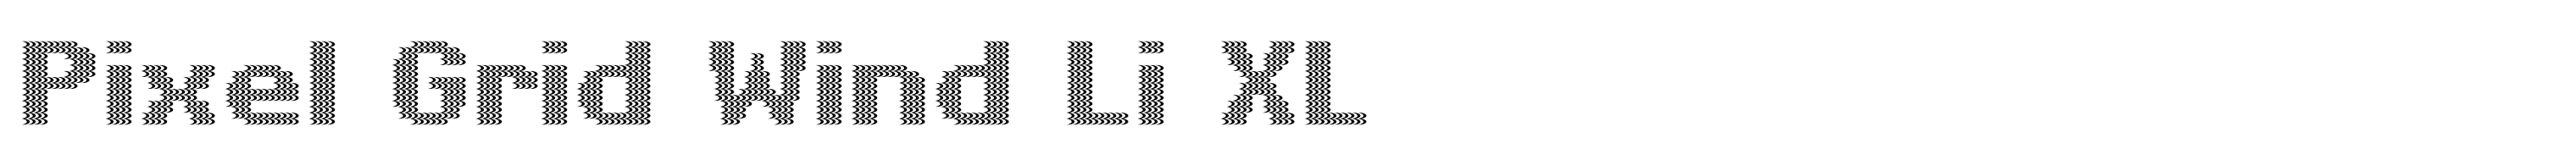 Pixel Grid Wind Li XL